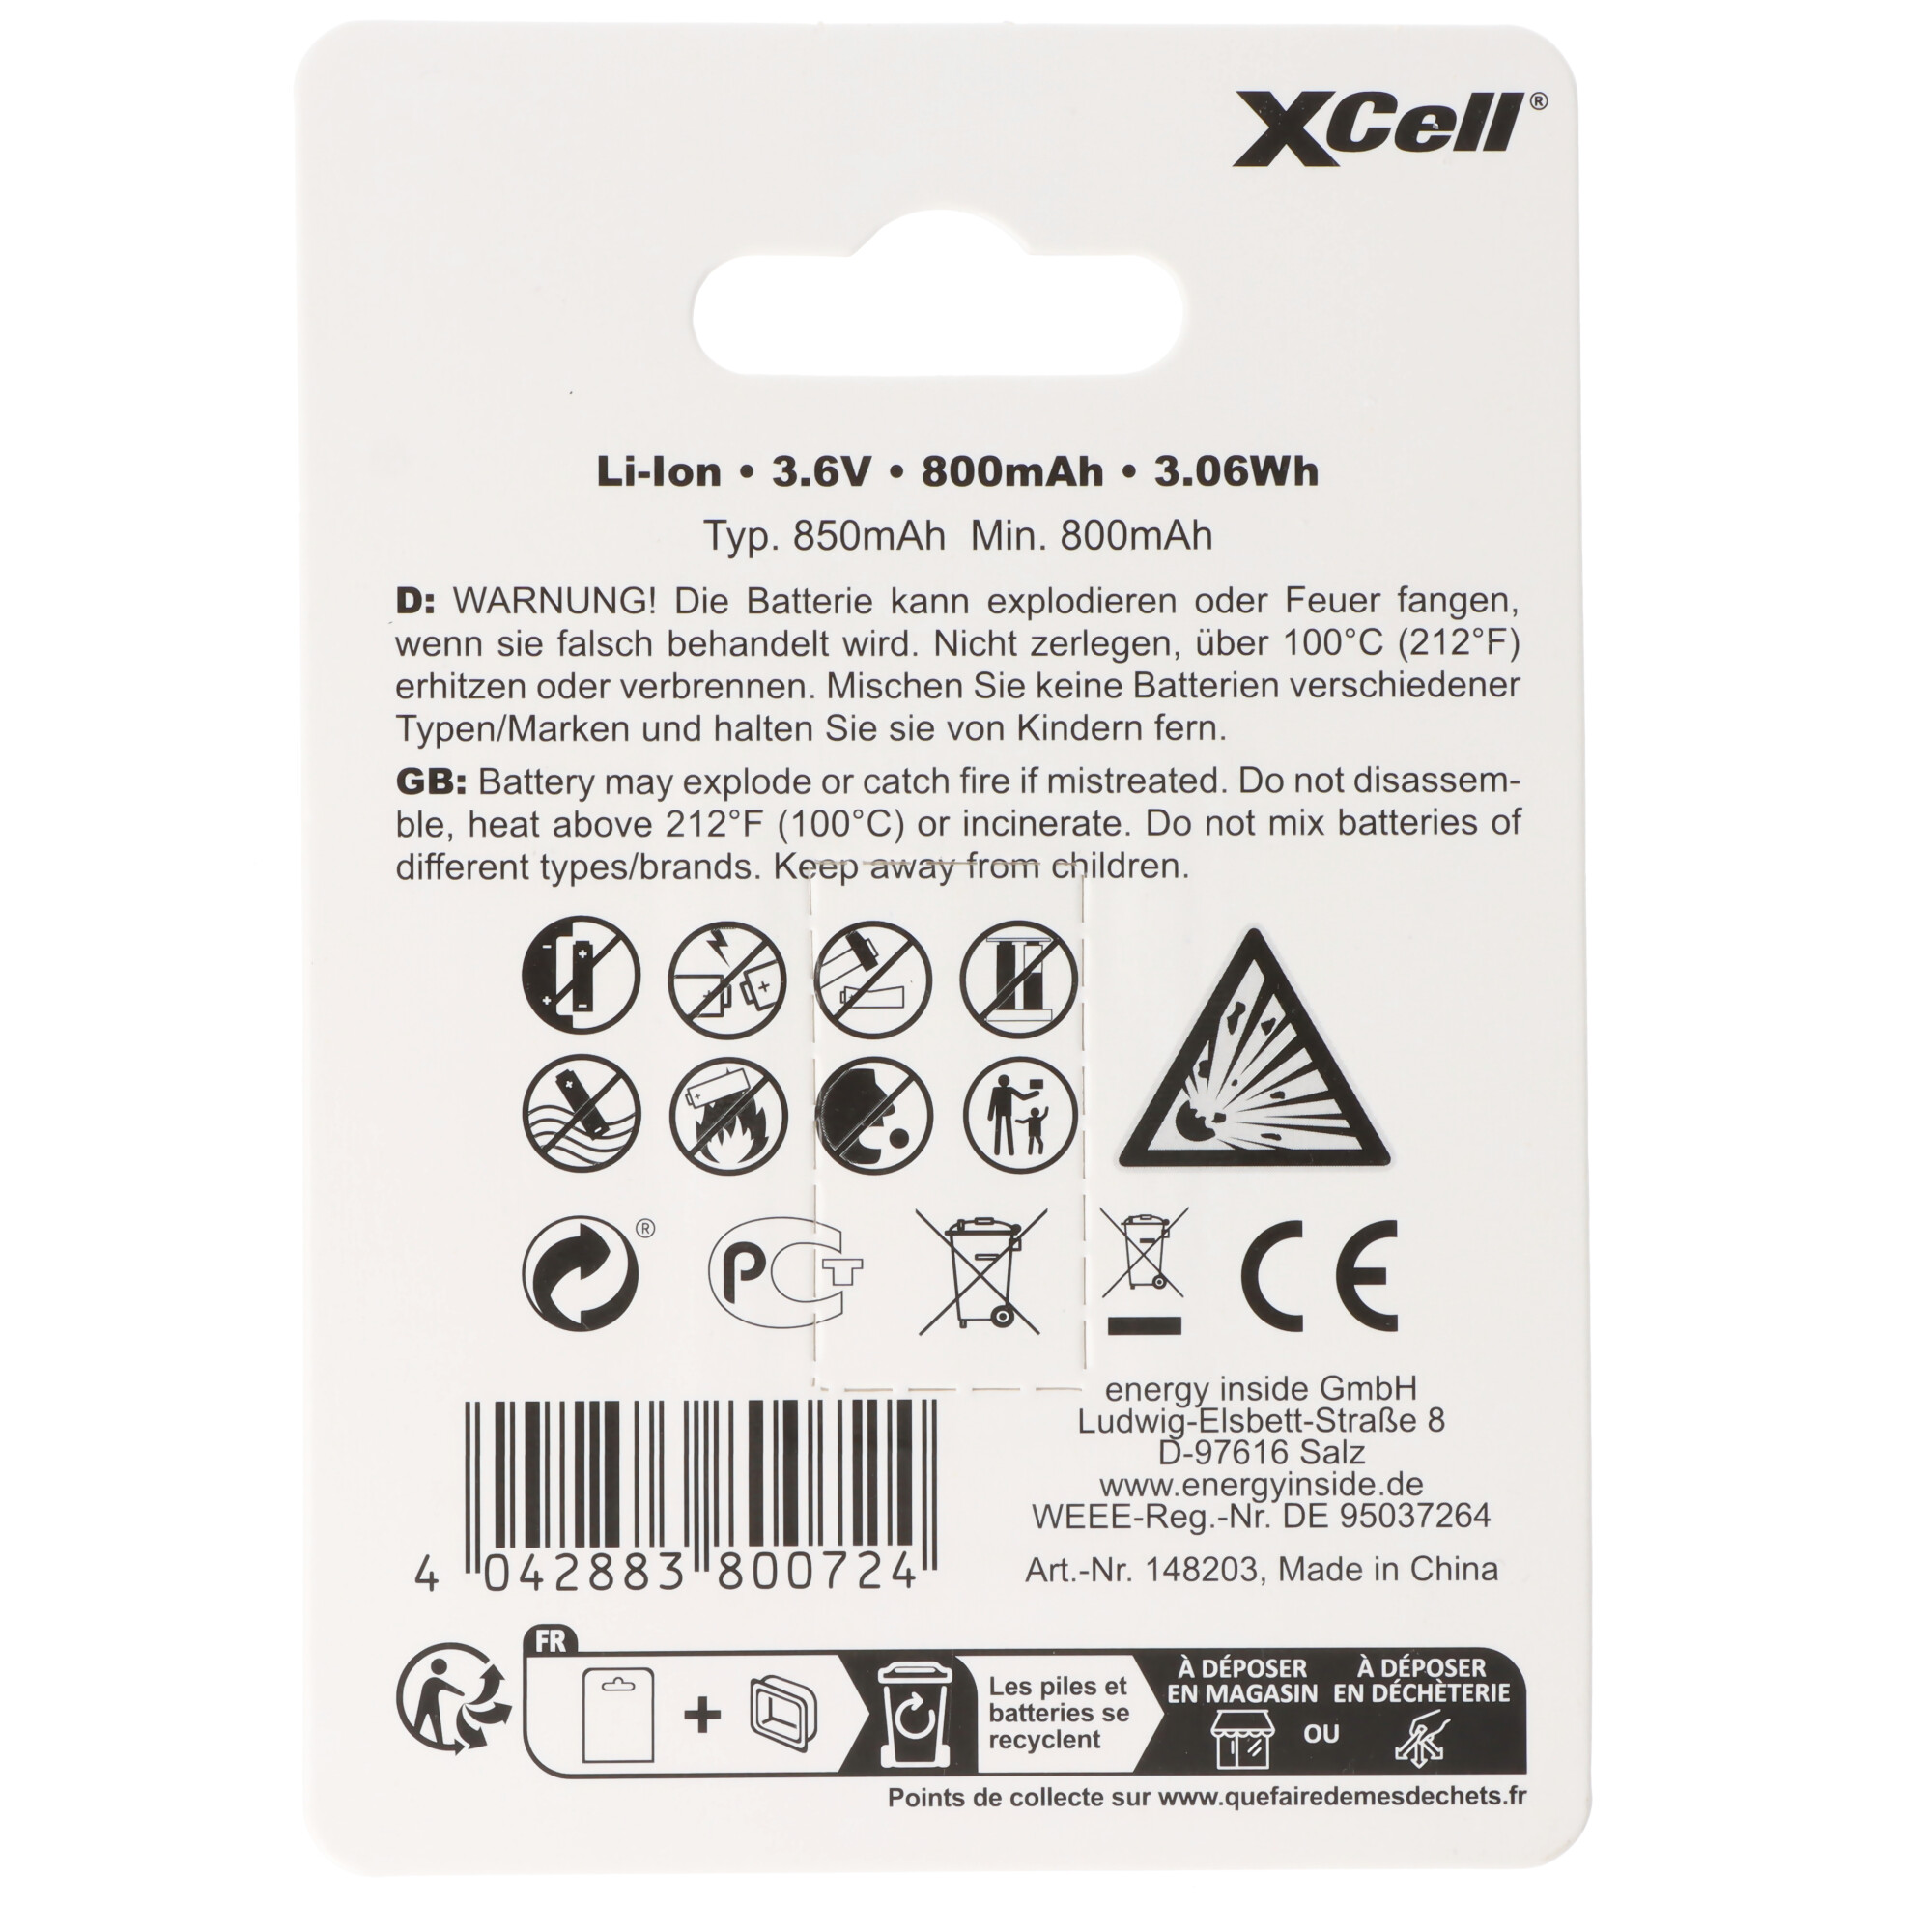 XCell Pro 16340 Li-Ion Akku CR123A geschützter Li-Ion Akku, mit USB-C Ladebuchse, min. 800mAh max. 850mAh, 3,6 Volt